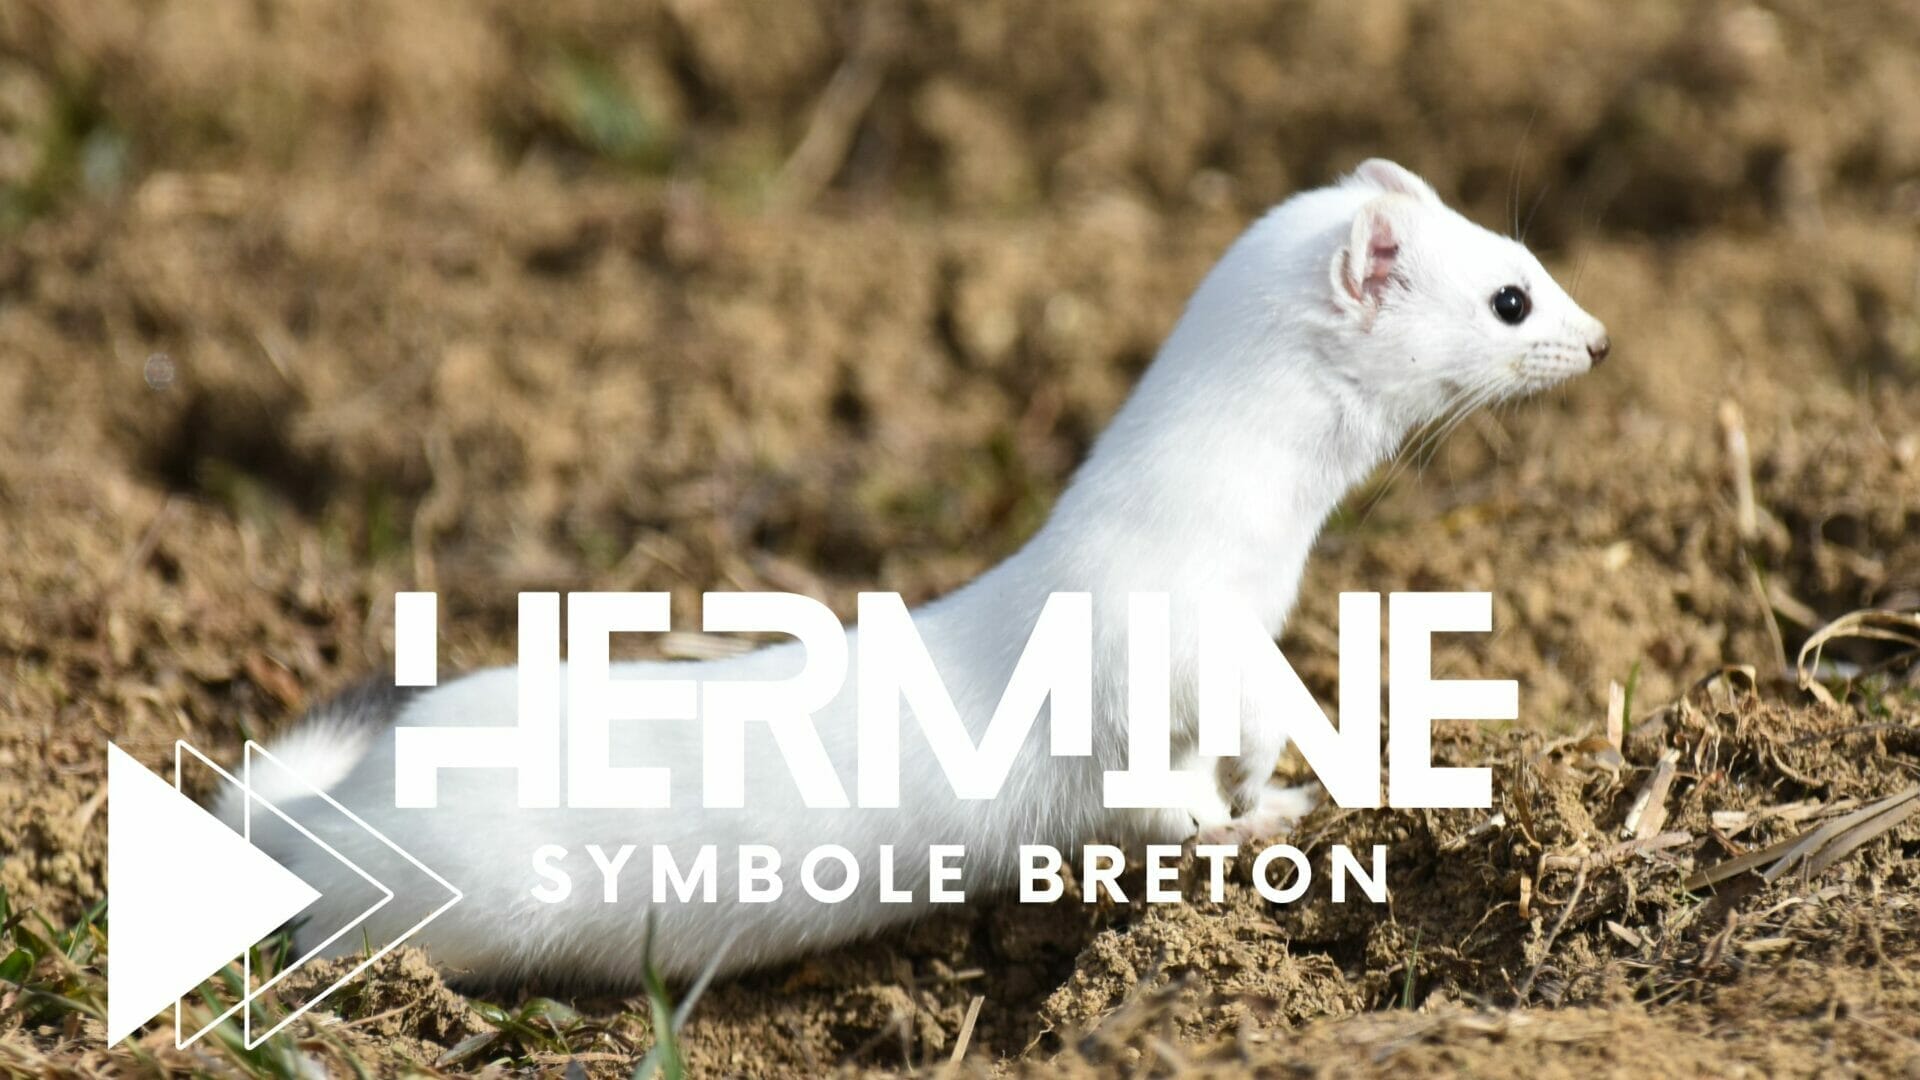 La voilà la Blanche Hermine, un symbole fort en Bretagne